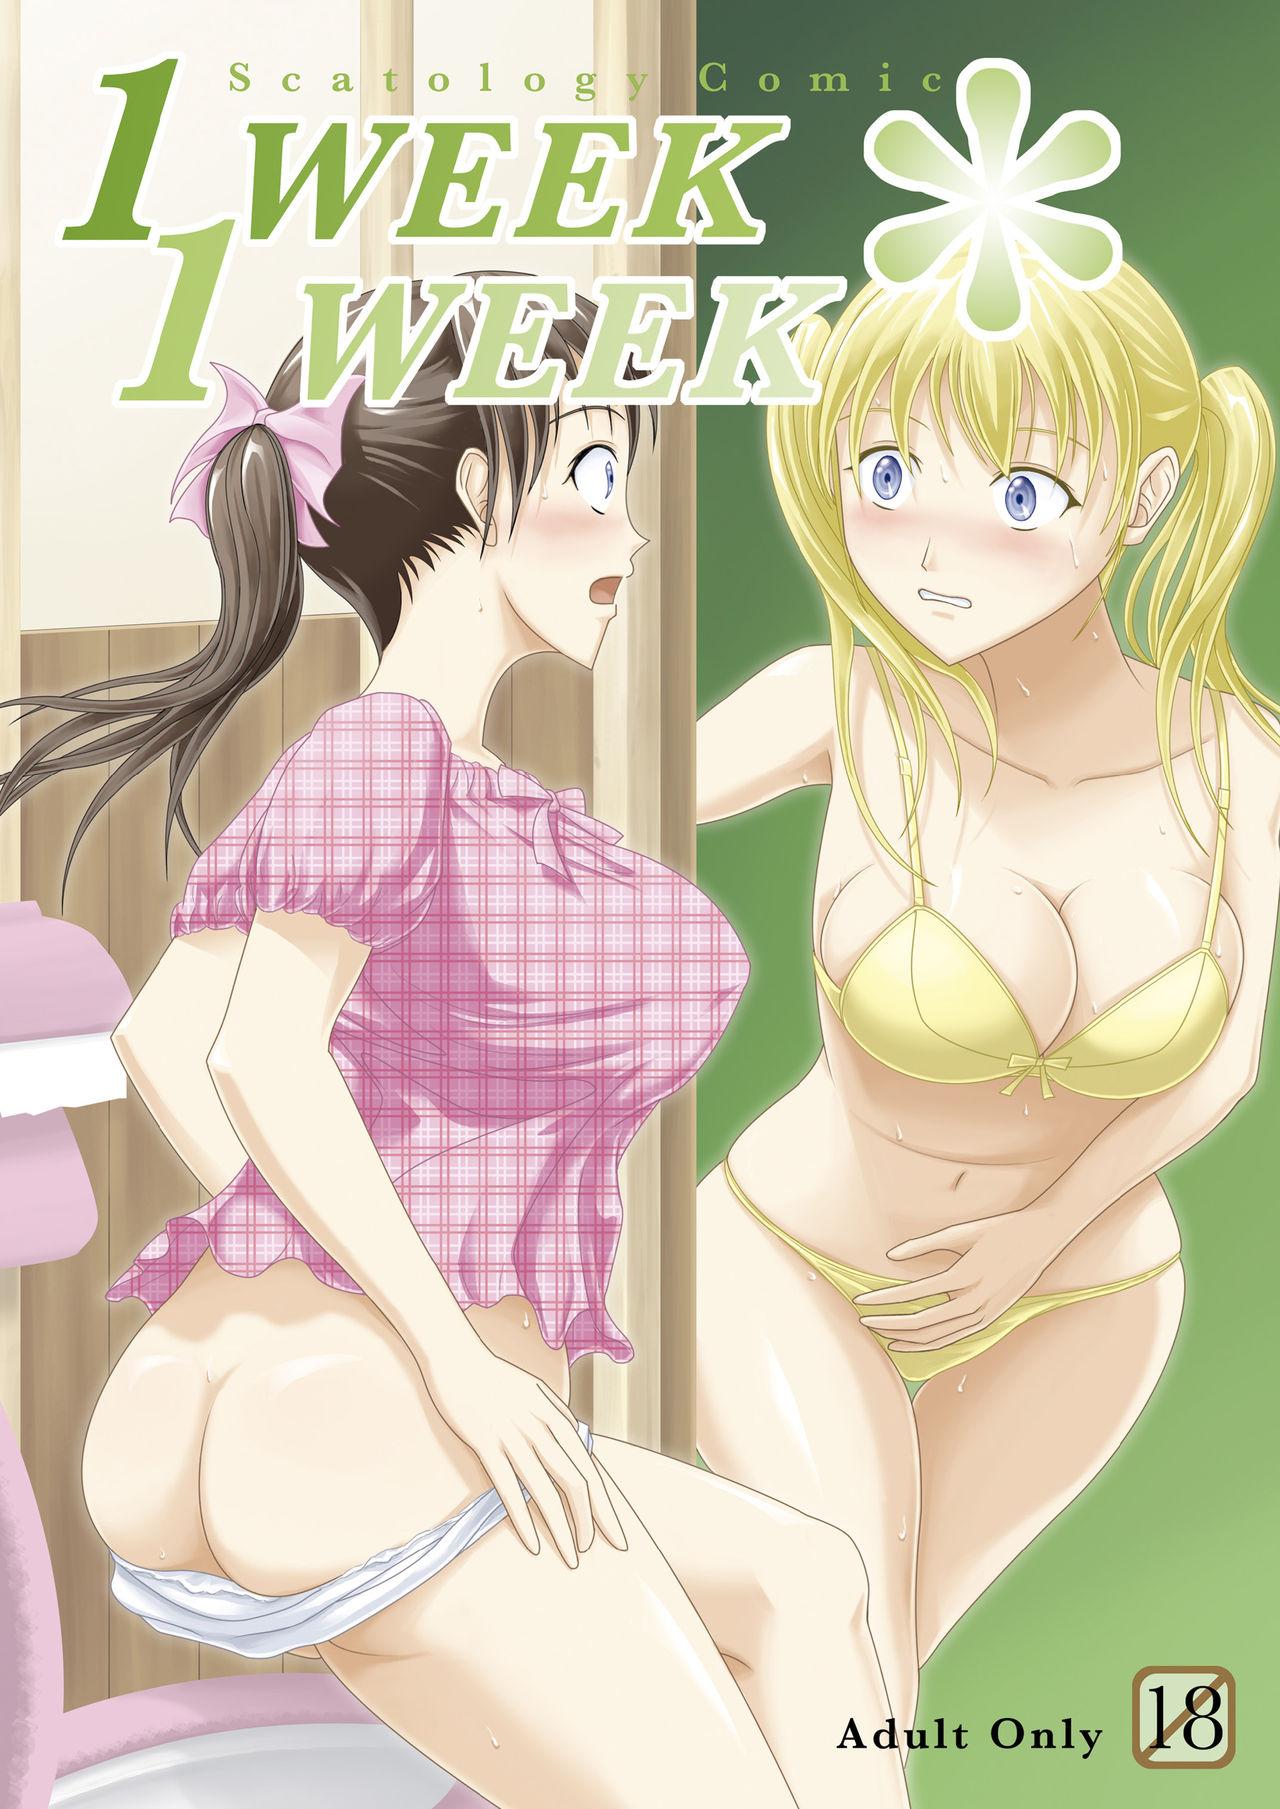 Rough Sex 1 Week*1 Week - Original Strip - Page 2